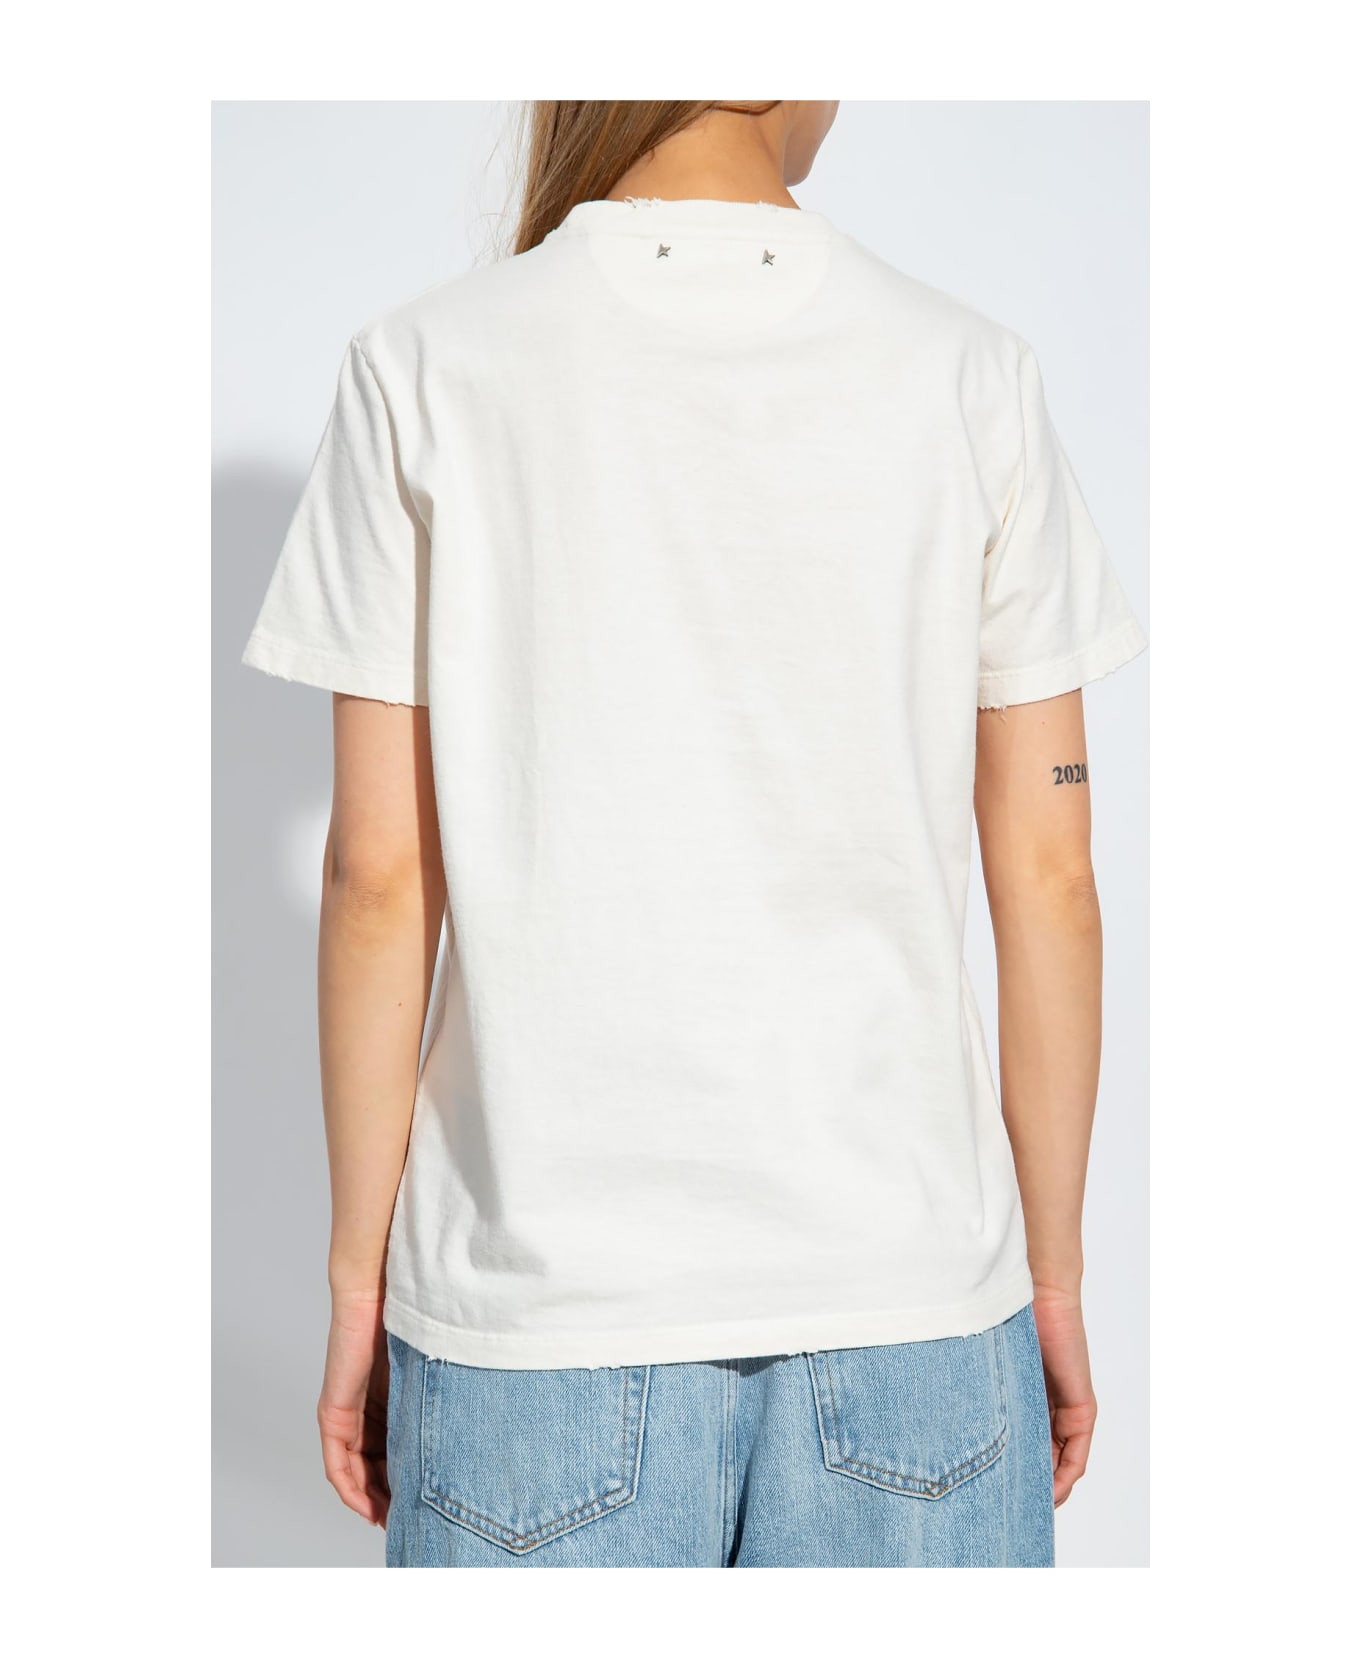 Golden Goose Printed T-shirt - HERITAGE WHITE MALT BALL (White)